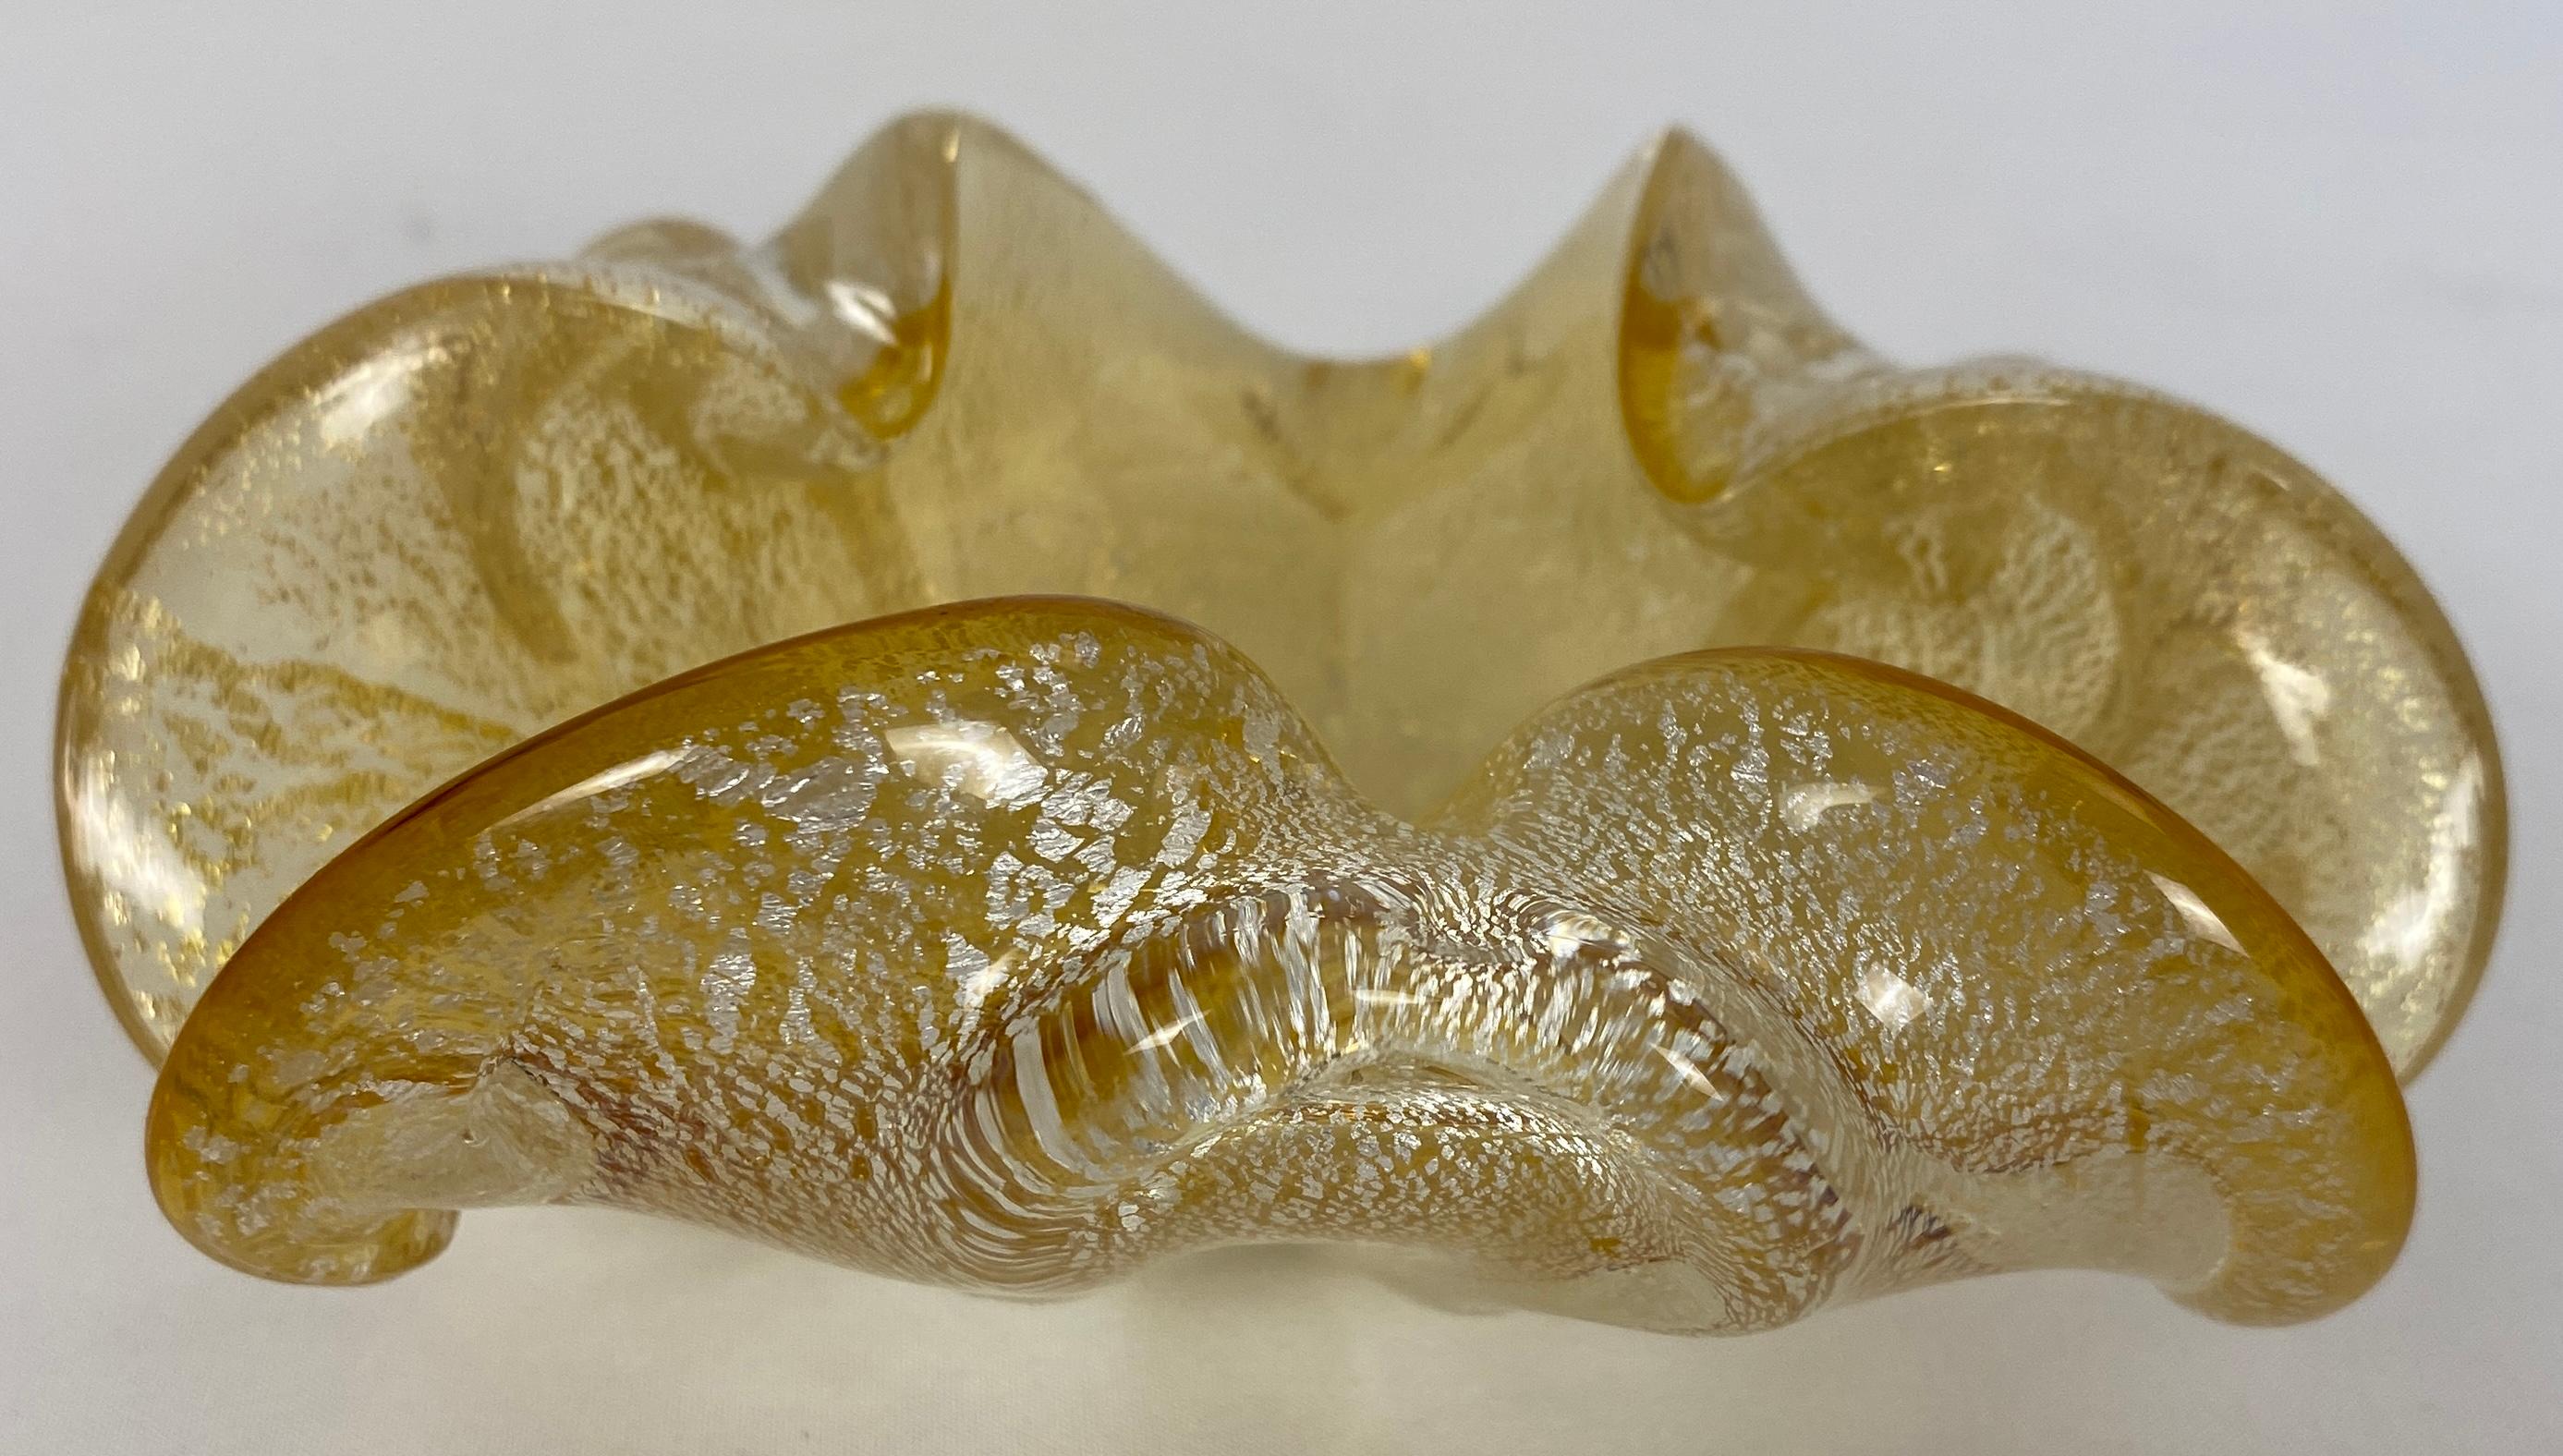 Ce bol, objet décoratif, élément ou cendrier original en verre d'art Barovier&Toso saupoudré d'or a été produit dans les années 1970 à Murano, en Italie. Réalisée selon la technique classique de Murano, elle présente une fantastique forme organique